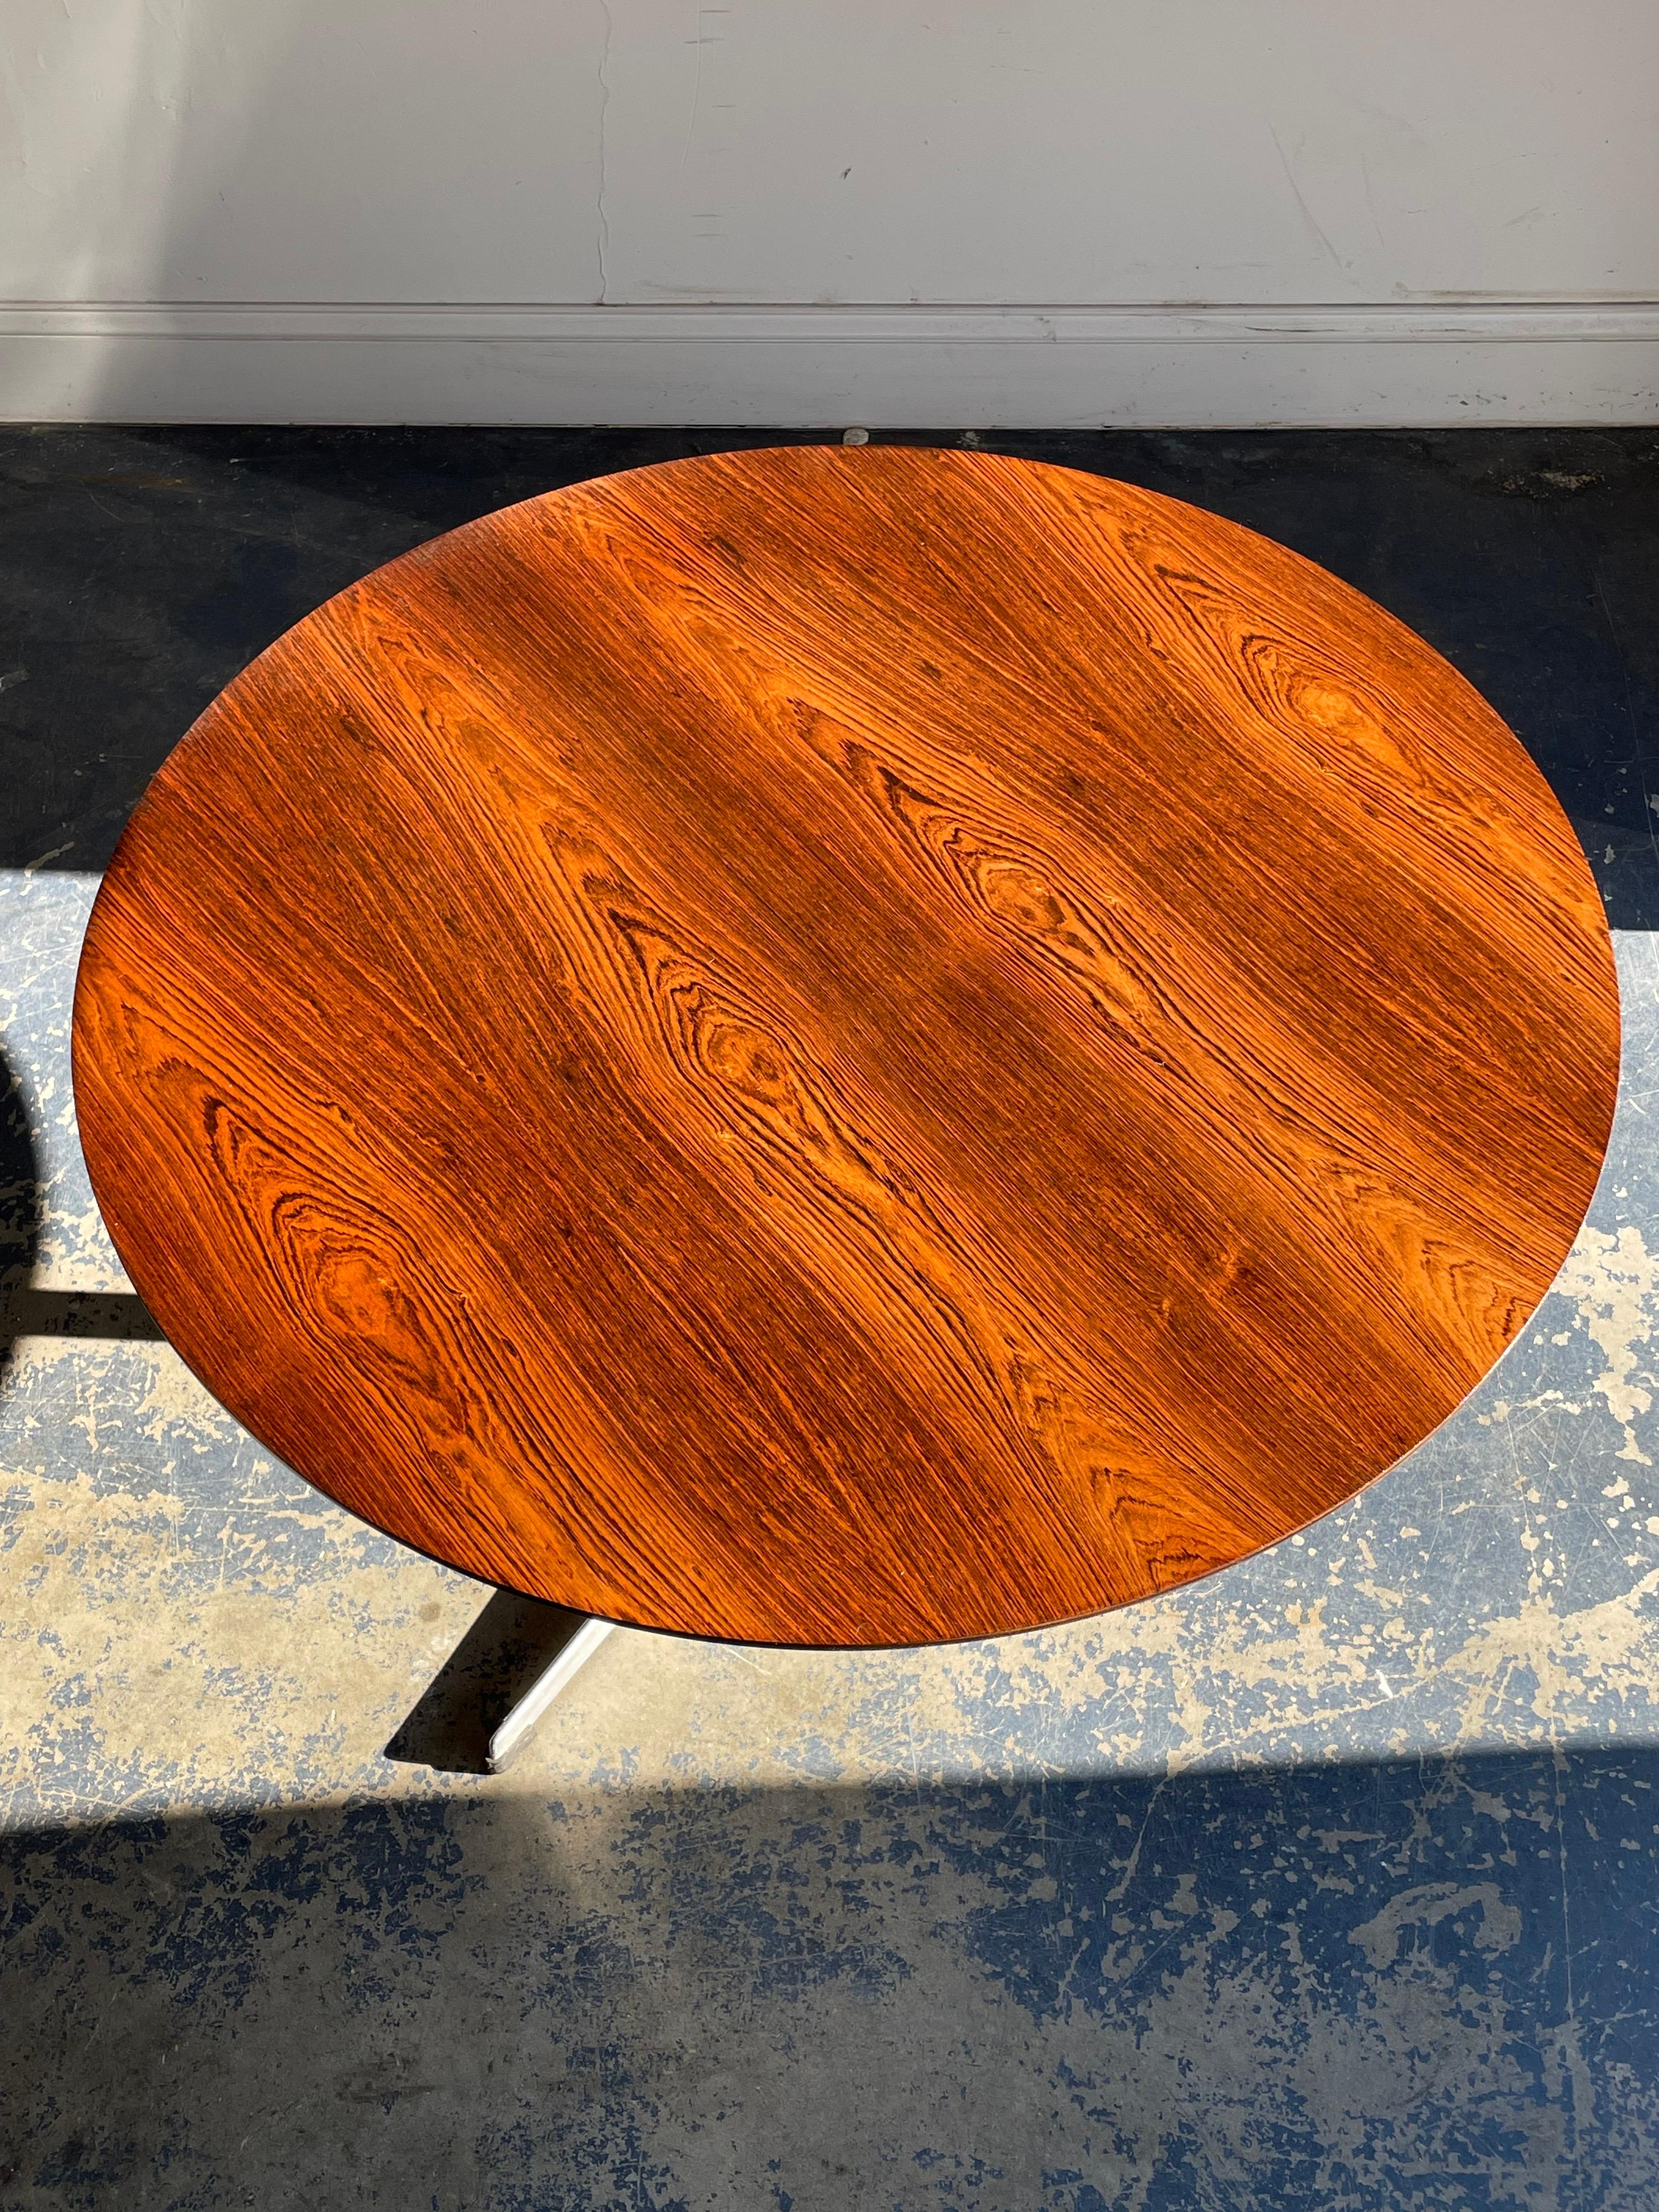 Superbe table basse minimaliste conçue par Arne Jacobsen pour Fritz Hansen. Plateau en bois de rose et base en aluminium. La table a été conçue pour s'harmoniser avec les chaises iconiques d'Arne Jacobsen, le cygne et l'œuf, comme en témoigne la